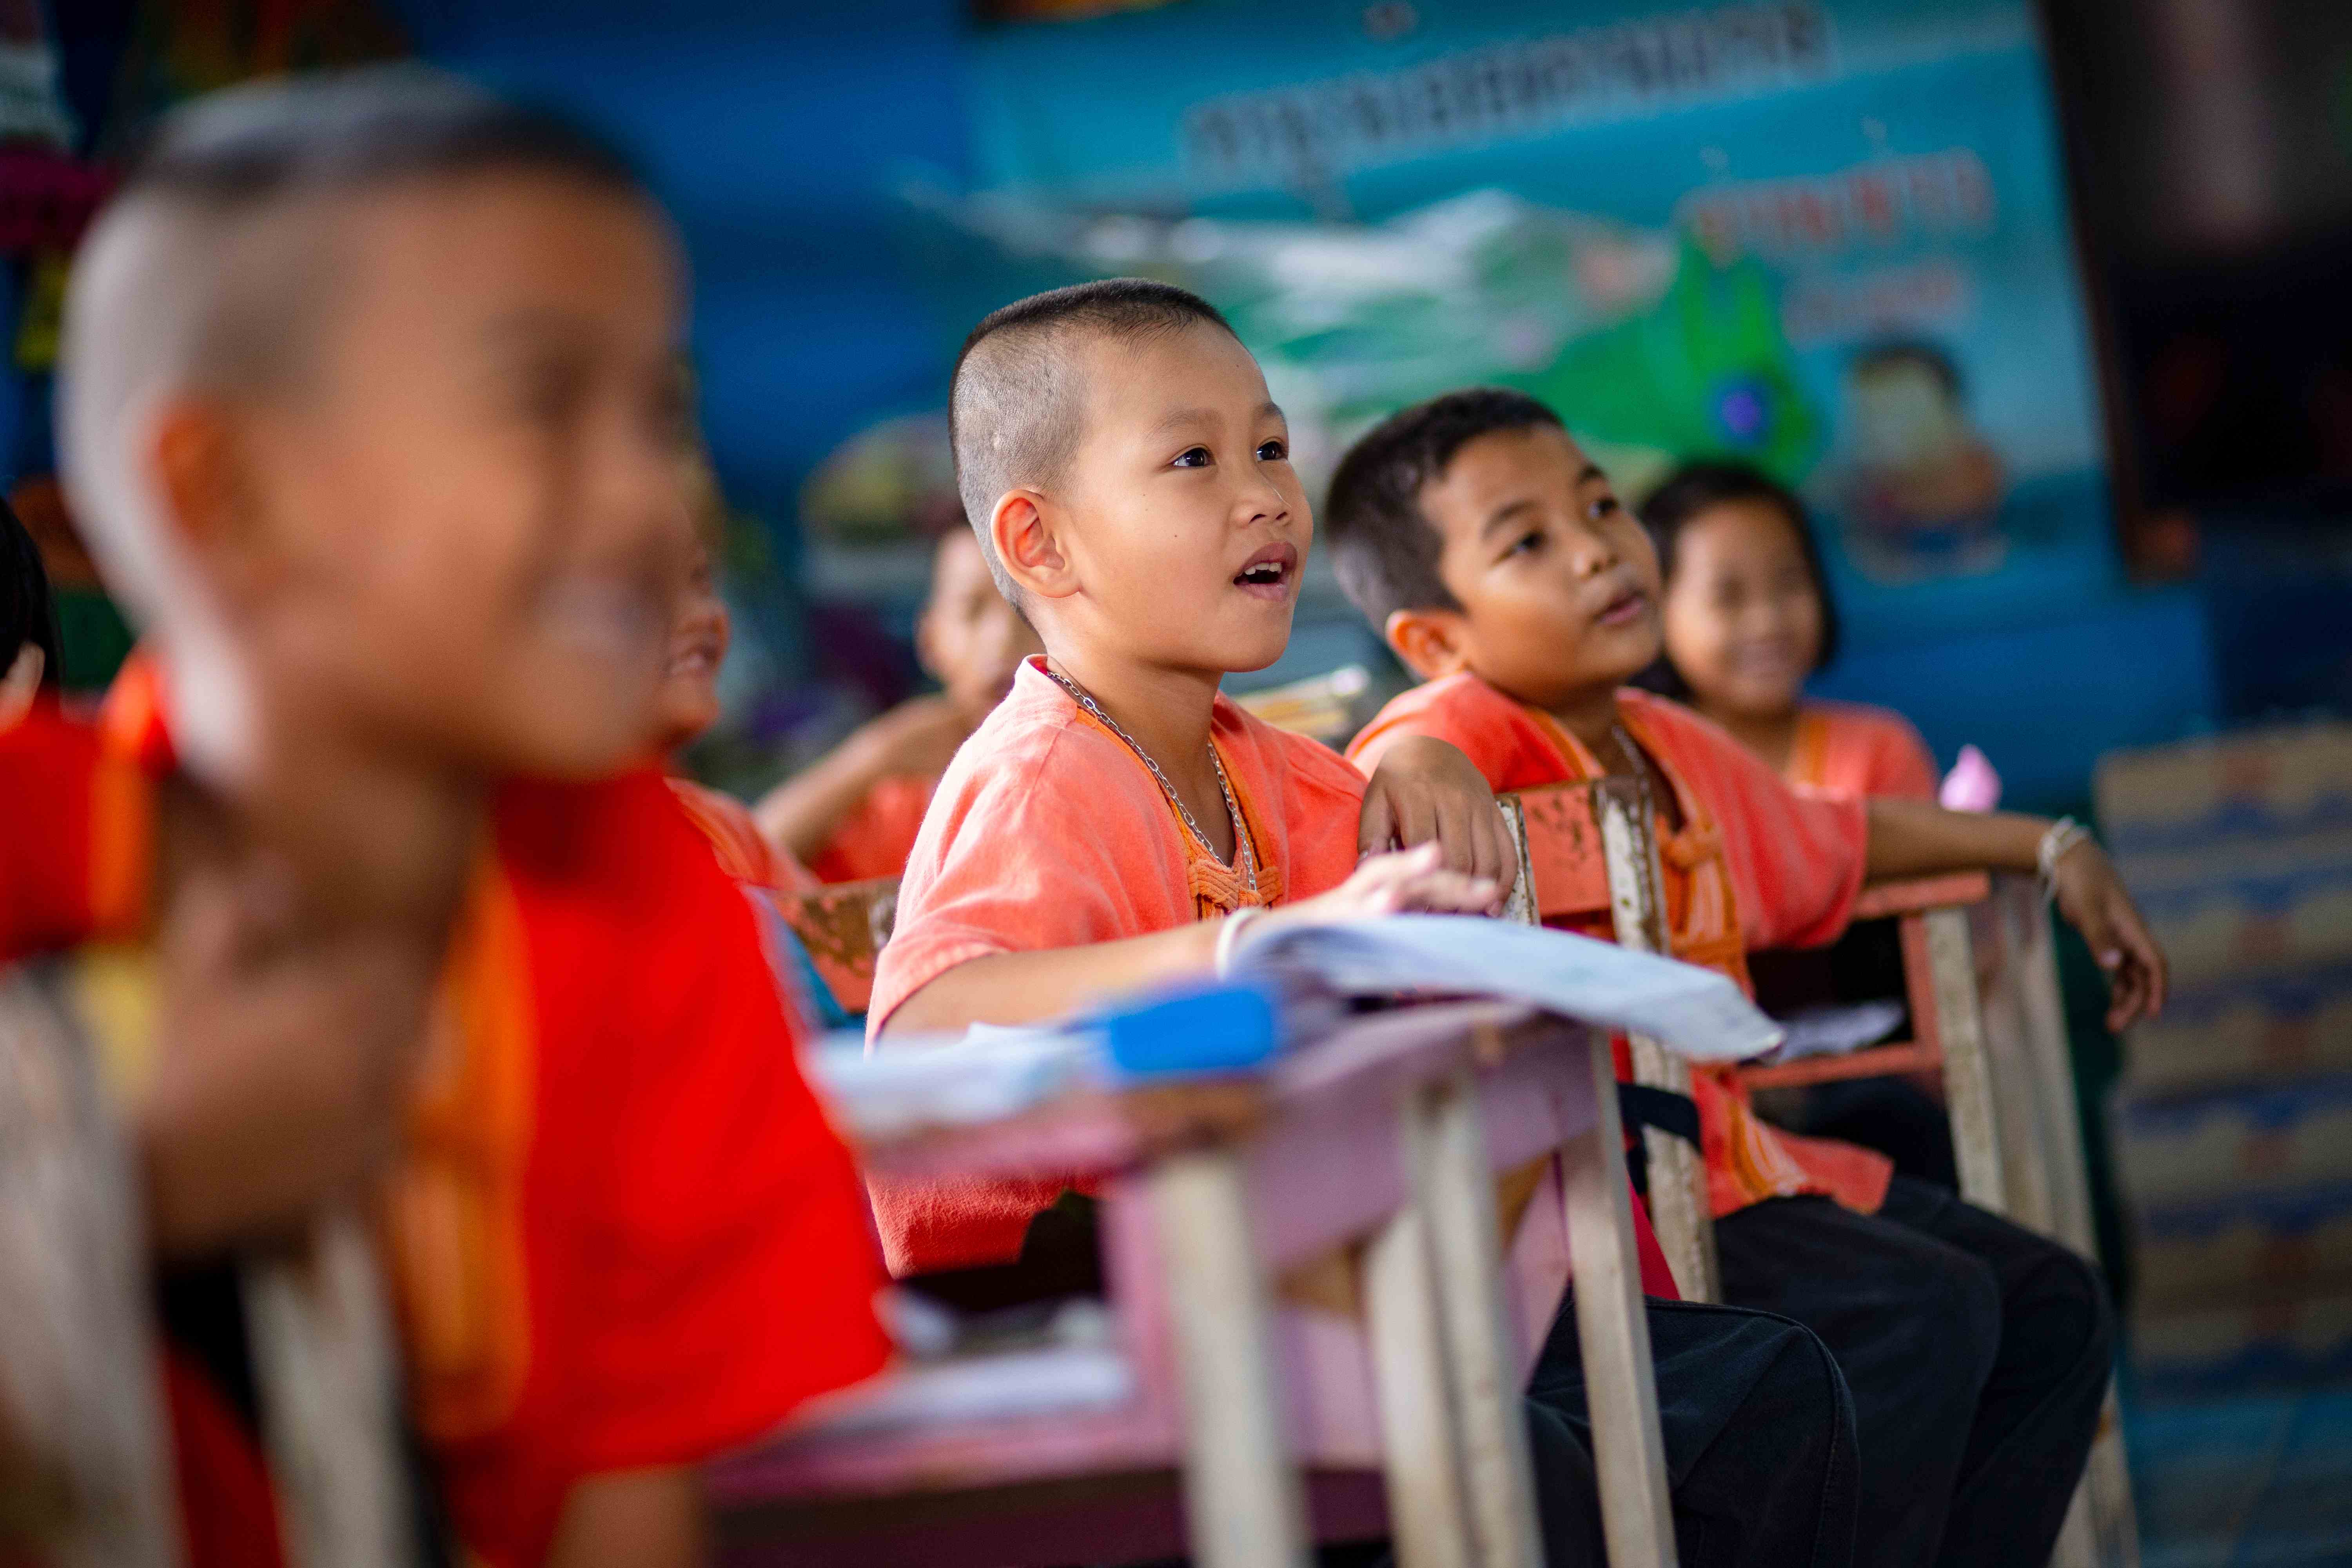 Kinder in einer Schule in Thailand betrachten etwas außerhalb des Bildes und haben Spaß  (Bildquelle: Jakob Studnar)